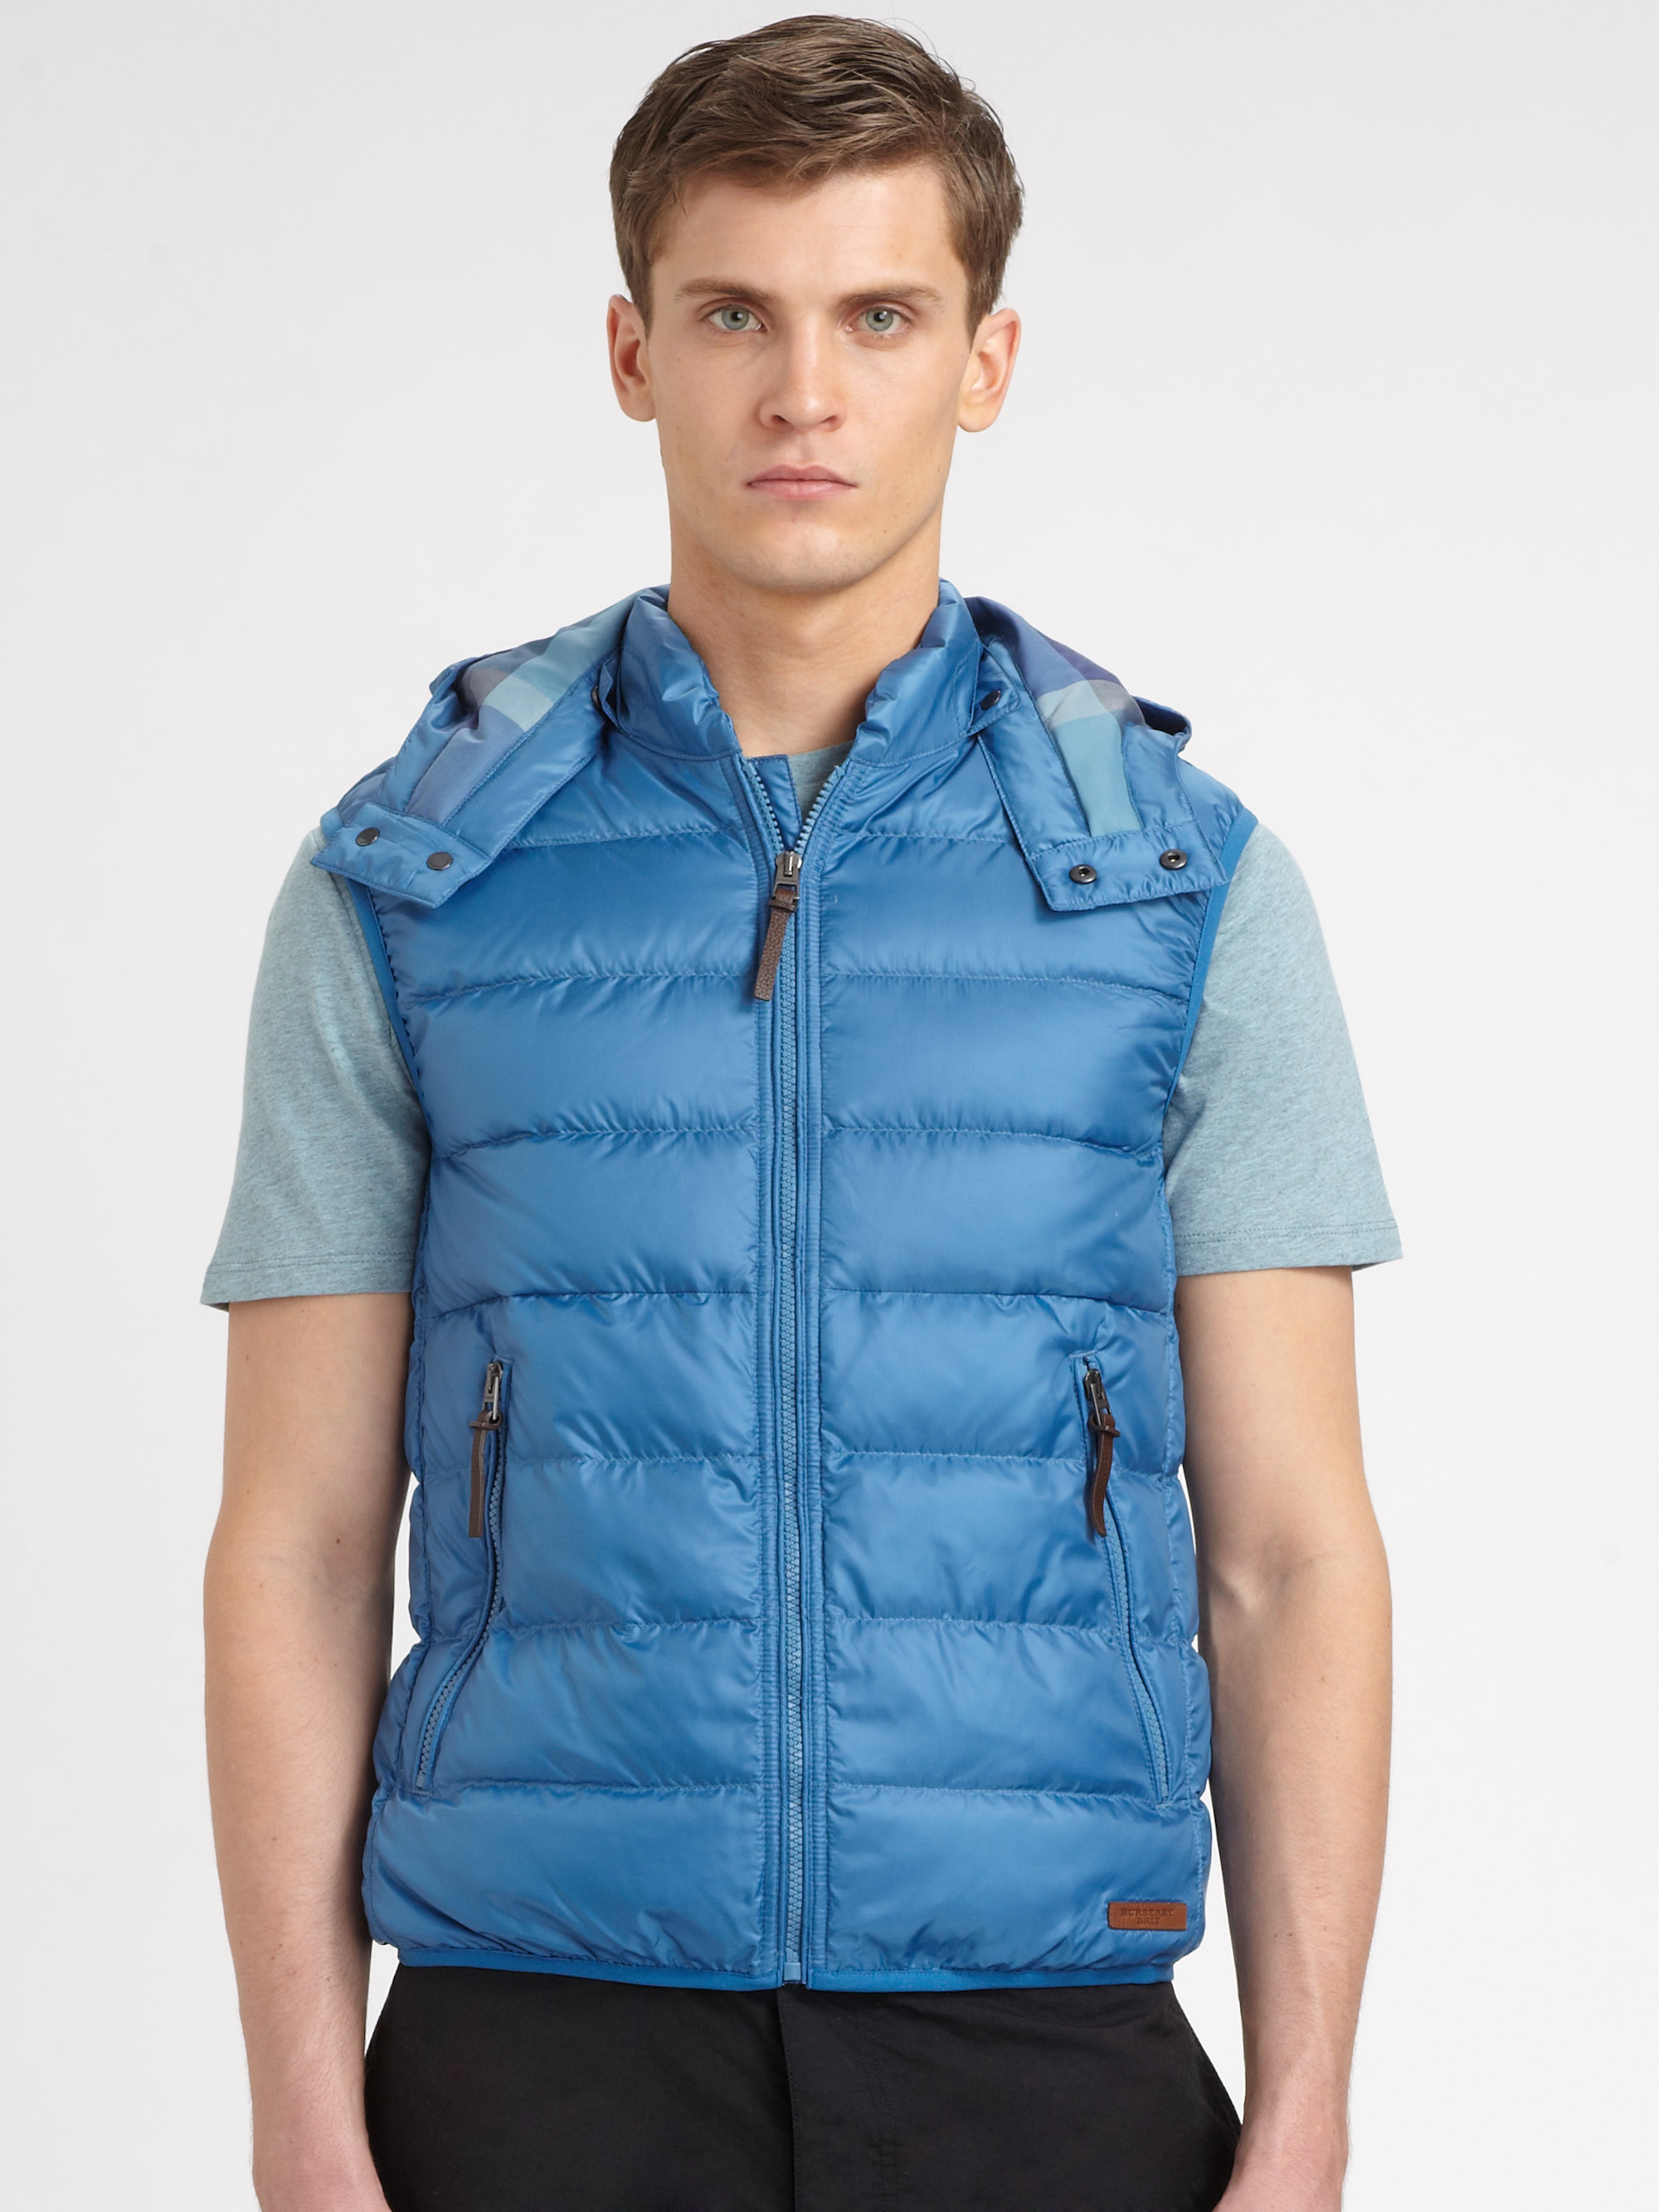 burberry vest blue